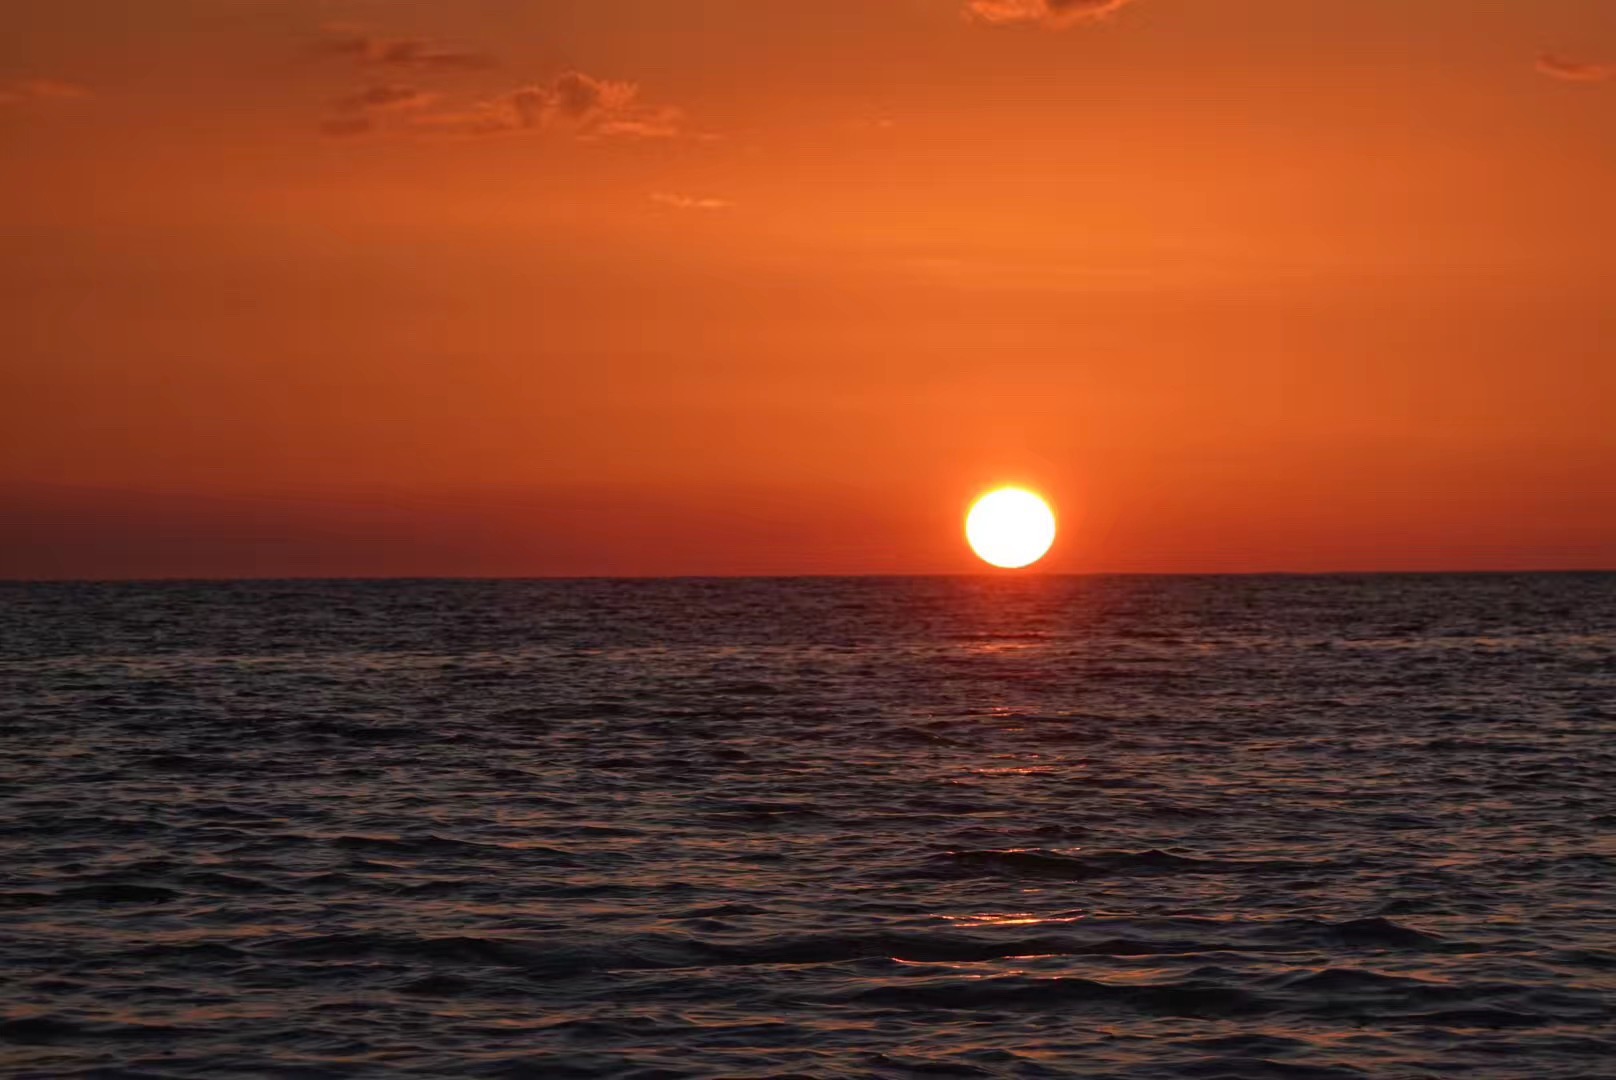 红彤彤的太阳消失在加勒比海前映红了整个海面，非常壮观！